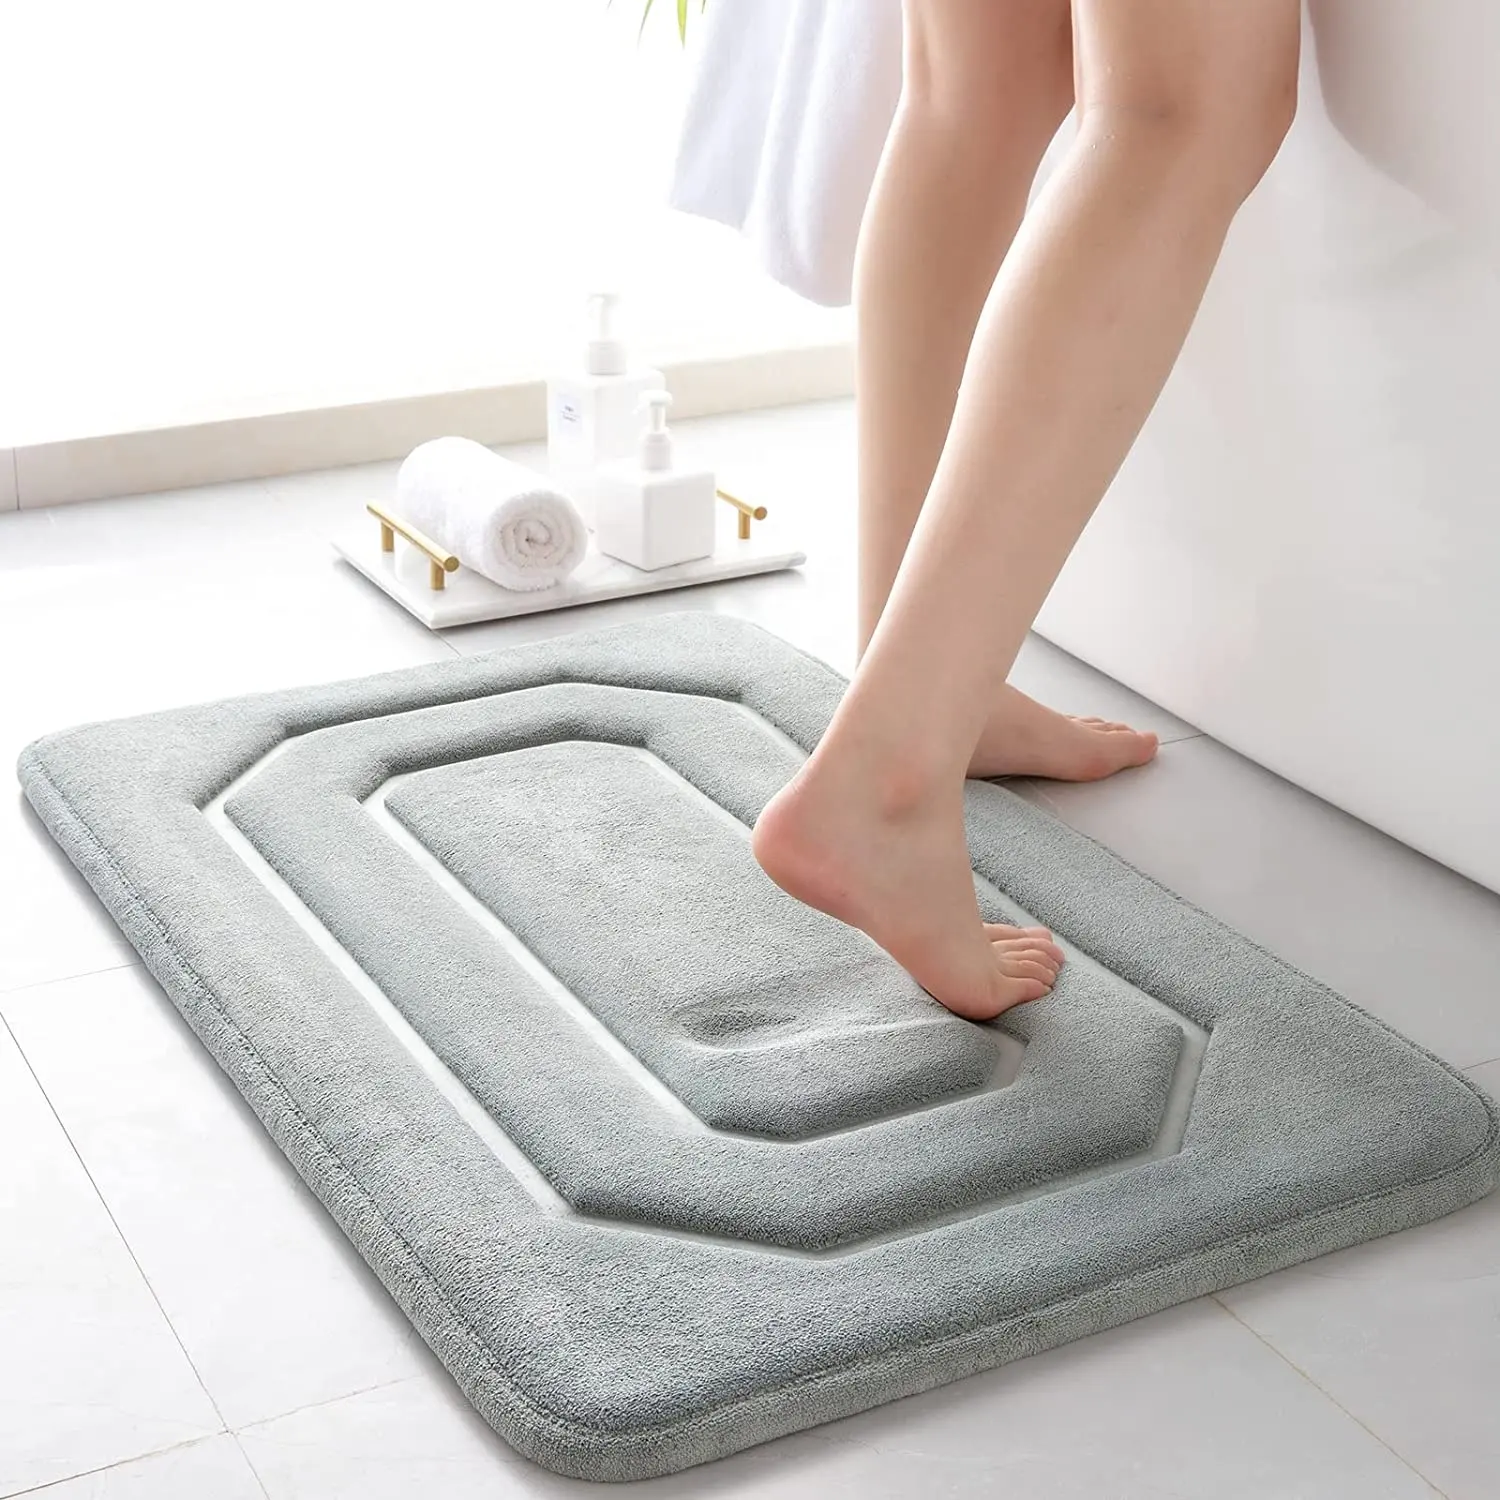 Microfibra poliestere memory foam tappetino da bagno set di tappeti assorbente d'acqua antiderrapante bano absorbente banheiros tappetino da bagno antiscivolo